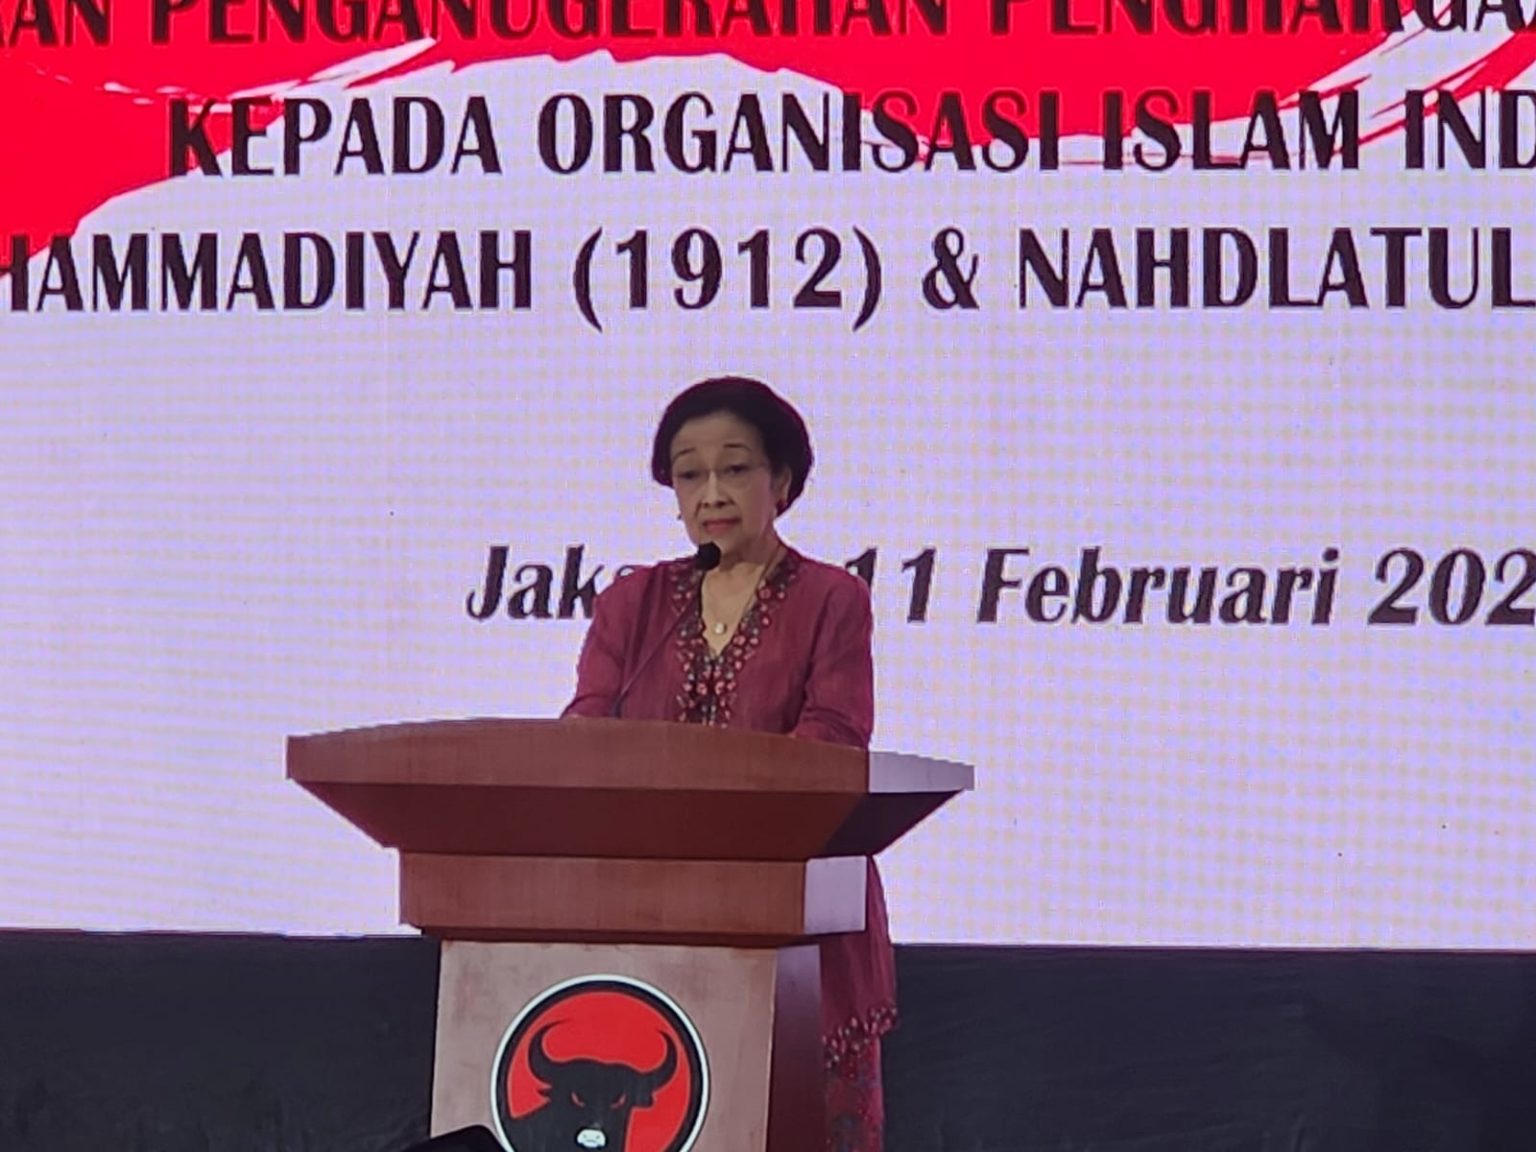 Megawati Ajukan Amicus Curiae, PAN: Kita Tidak Bisa Mengintervensi